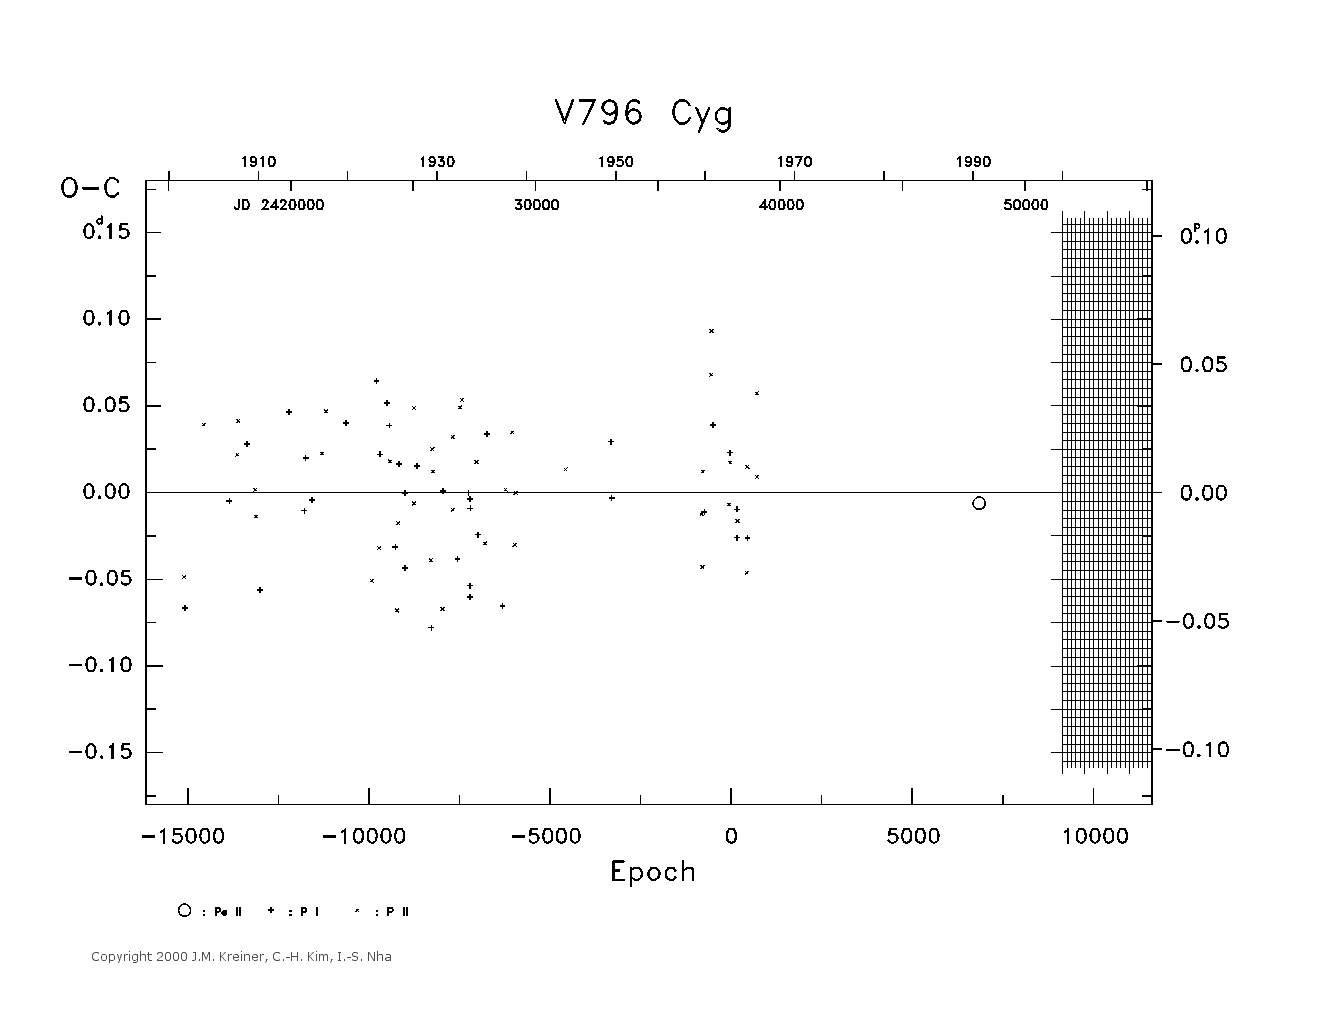 [IMAGE: large V796 CYG O-C diagram]